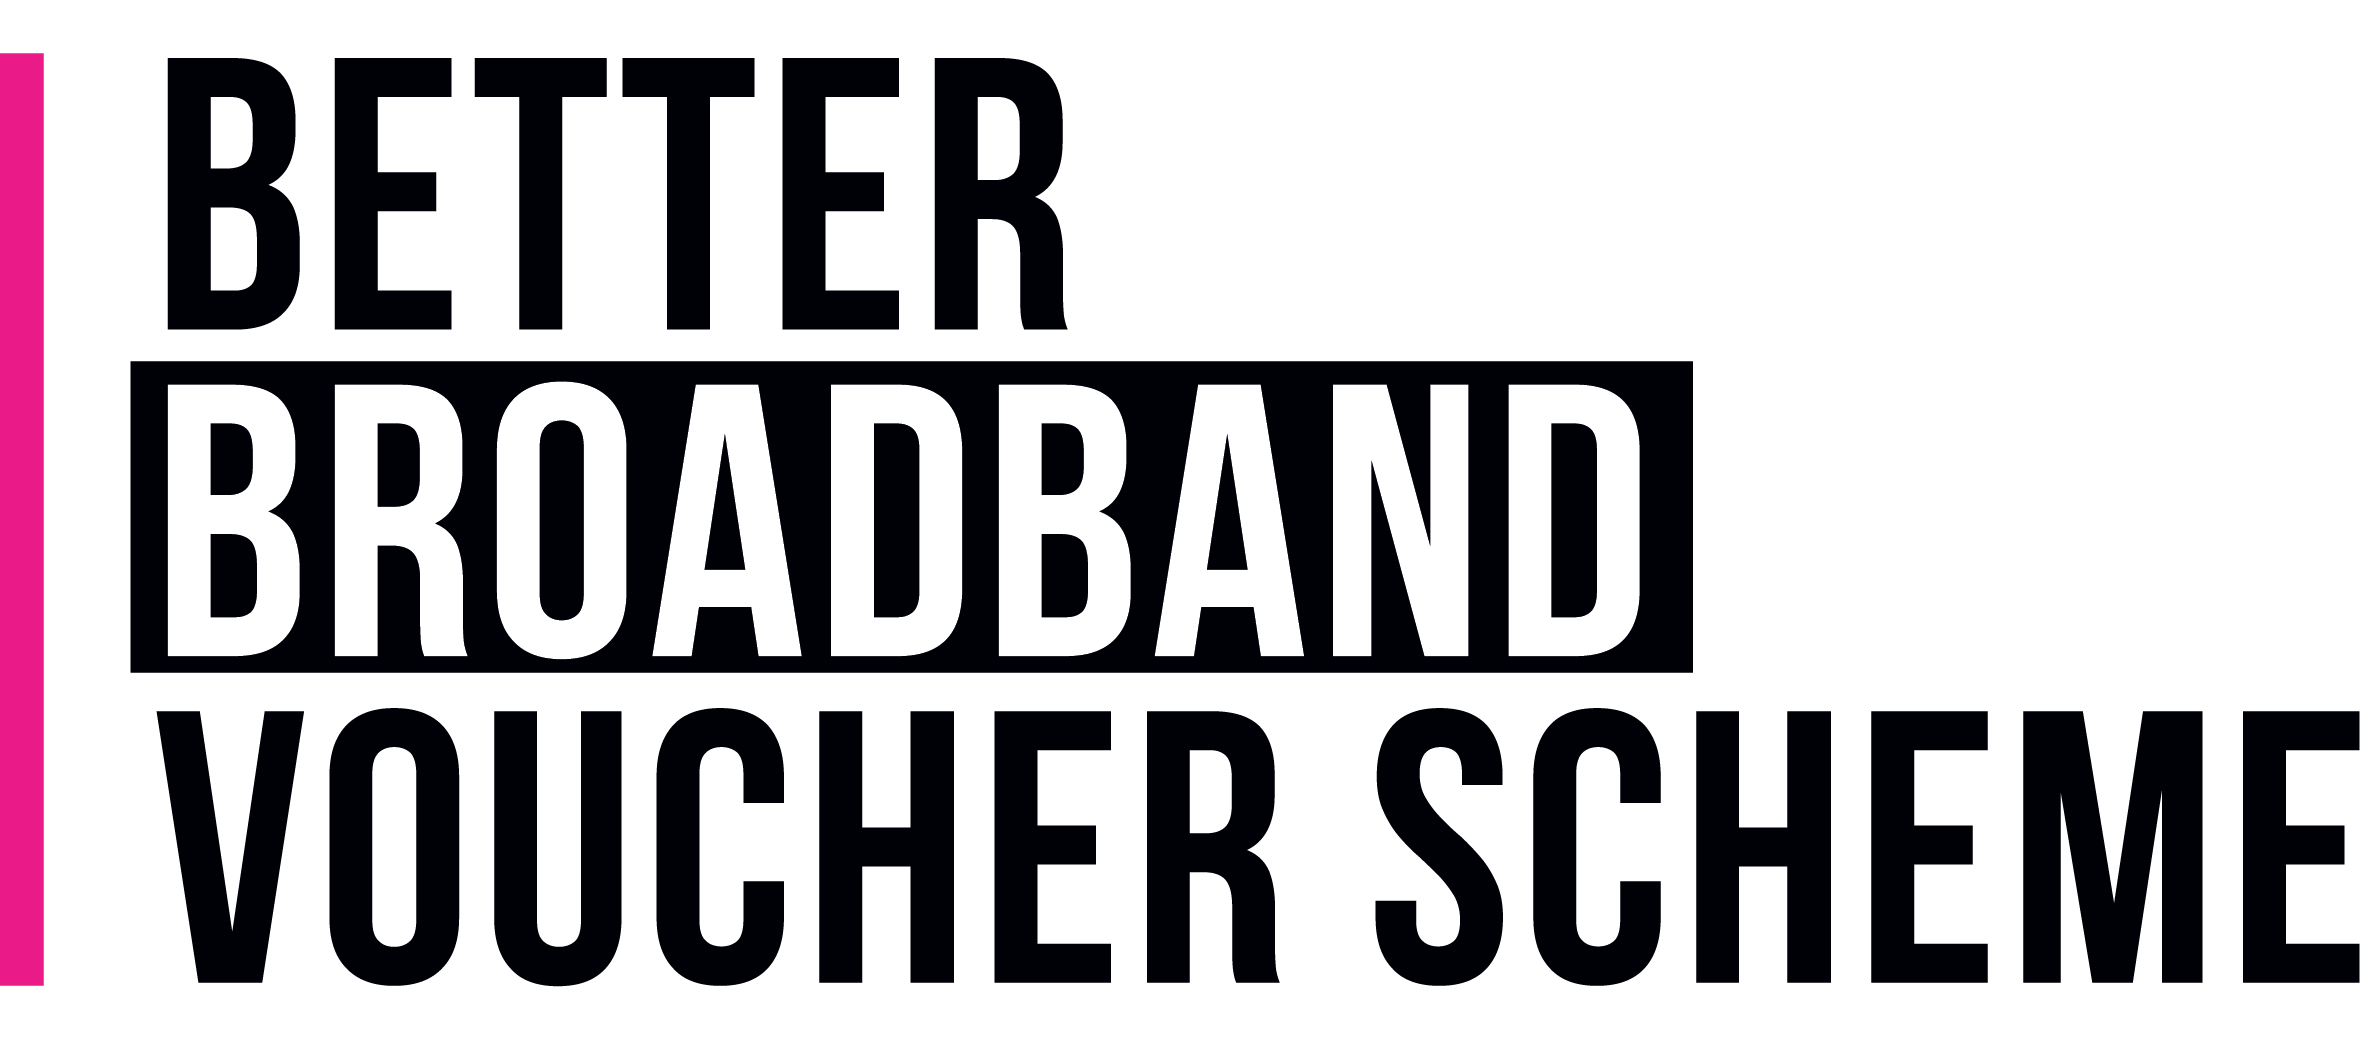 Better Broadband Voucher Scheme